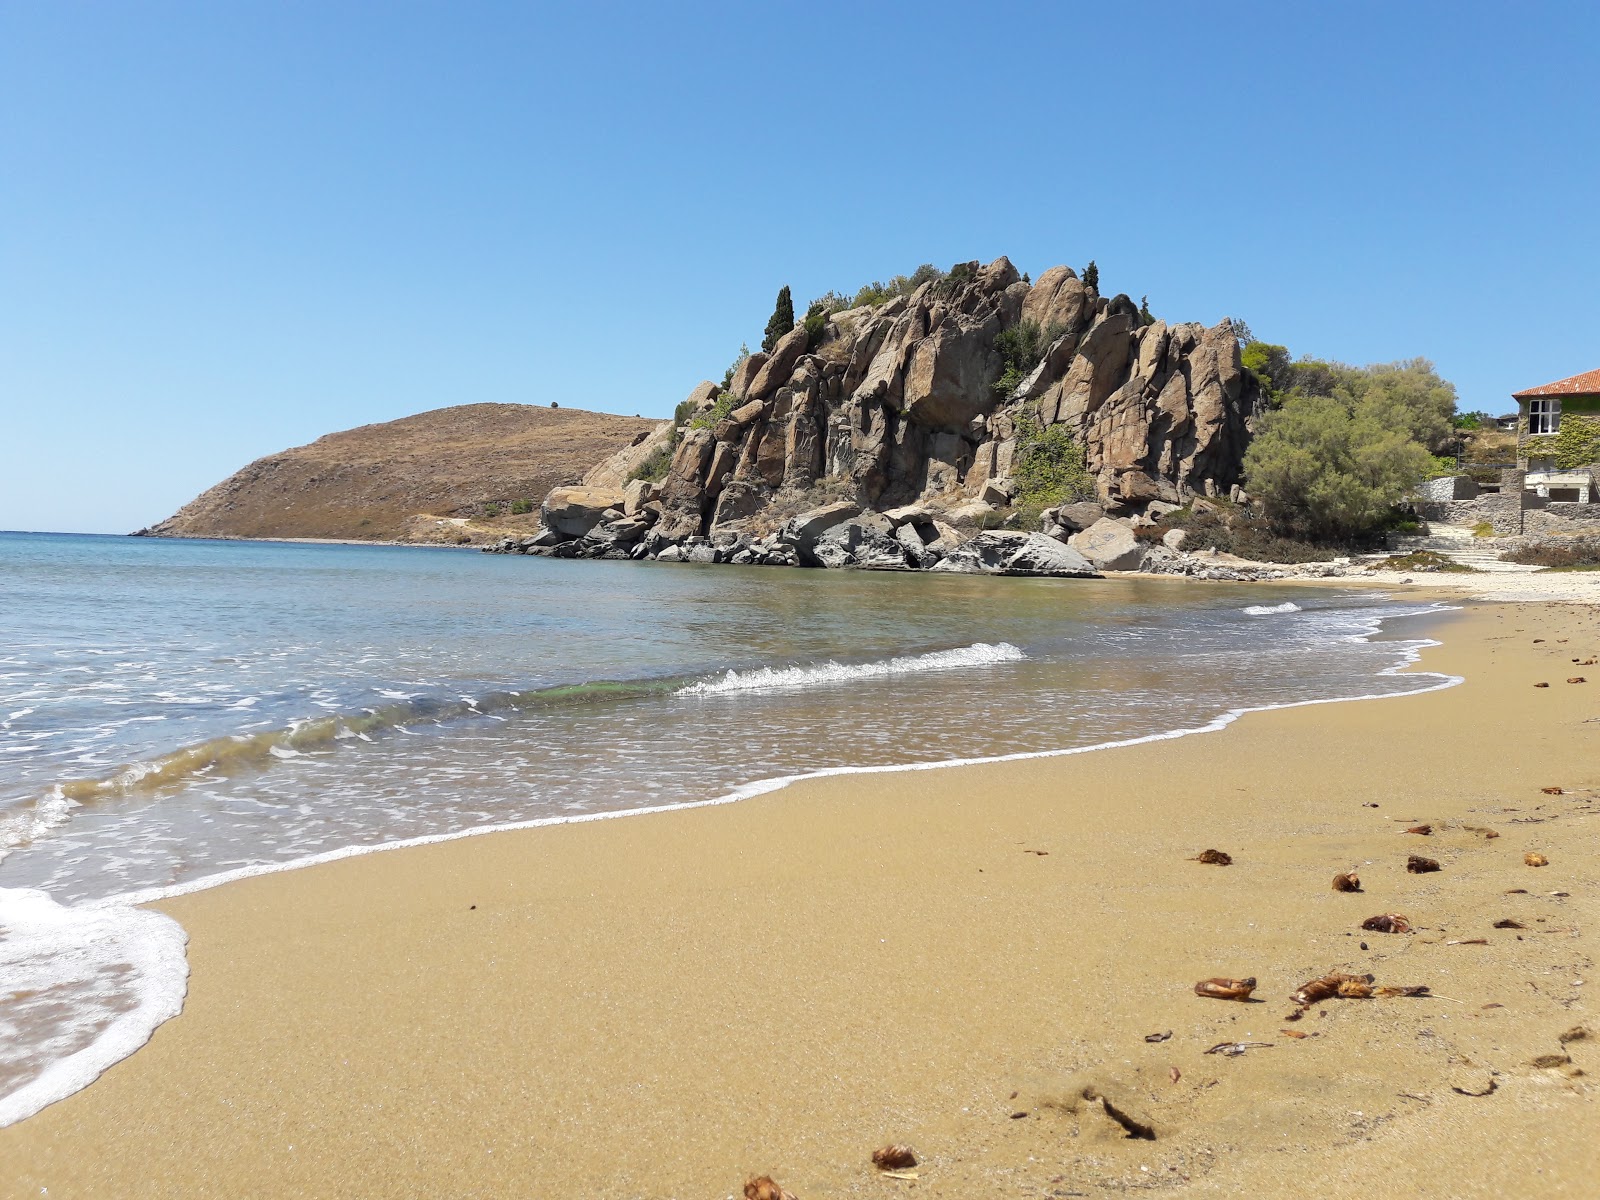 Myrina beach'in fotoğrafı kahverengi kum yüzey ile